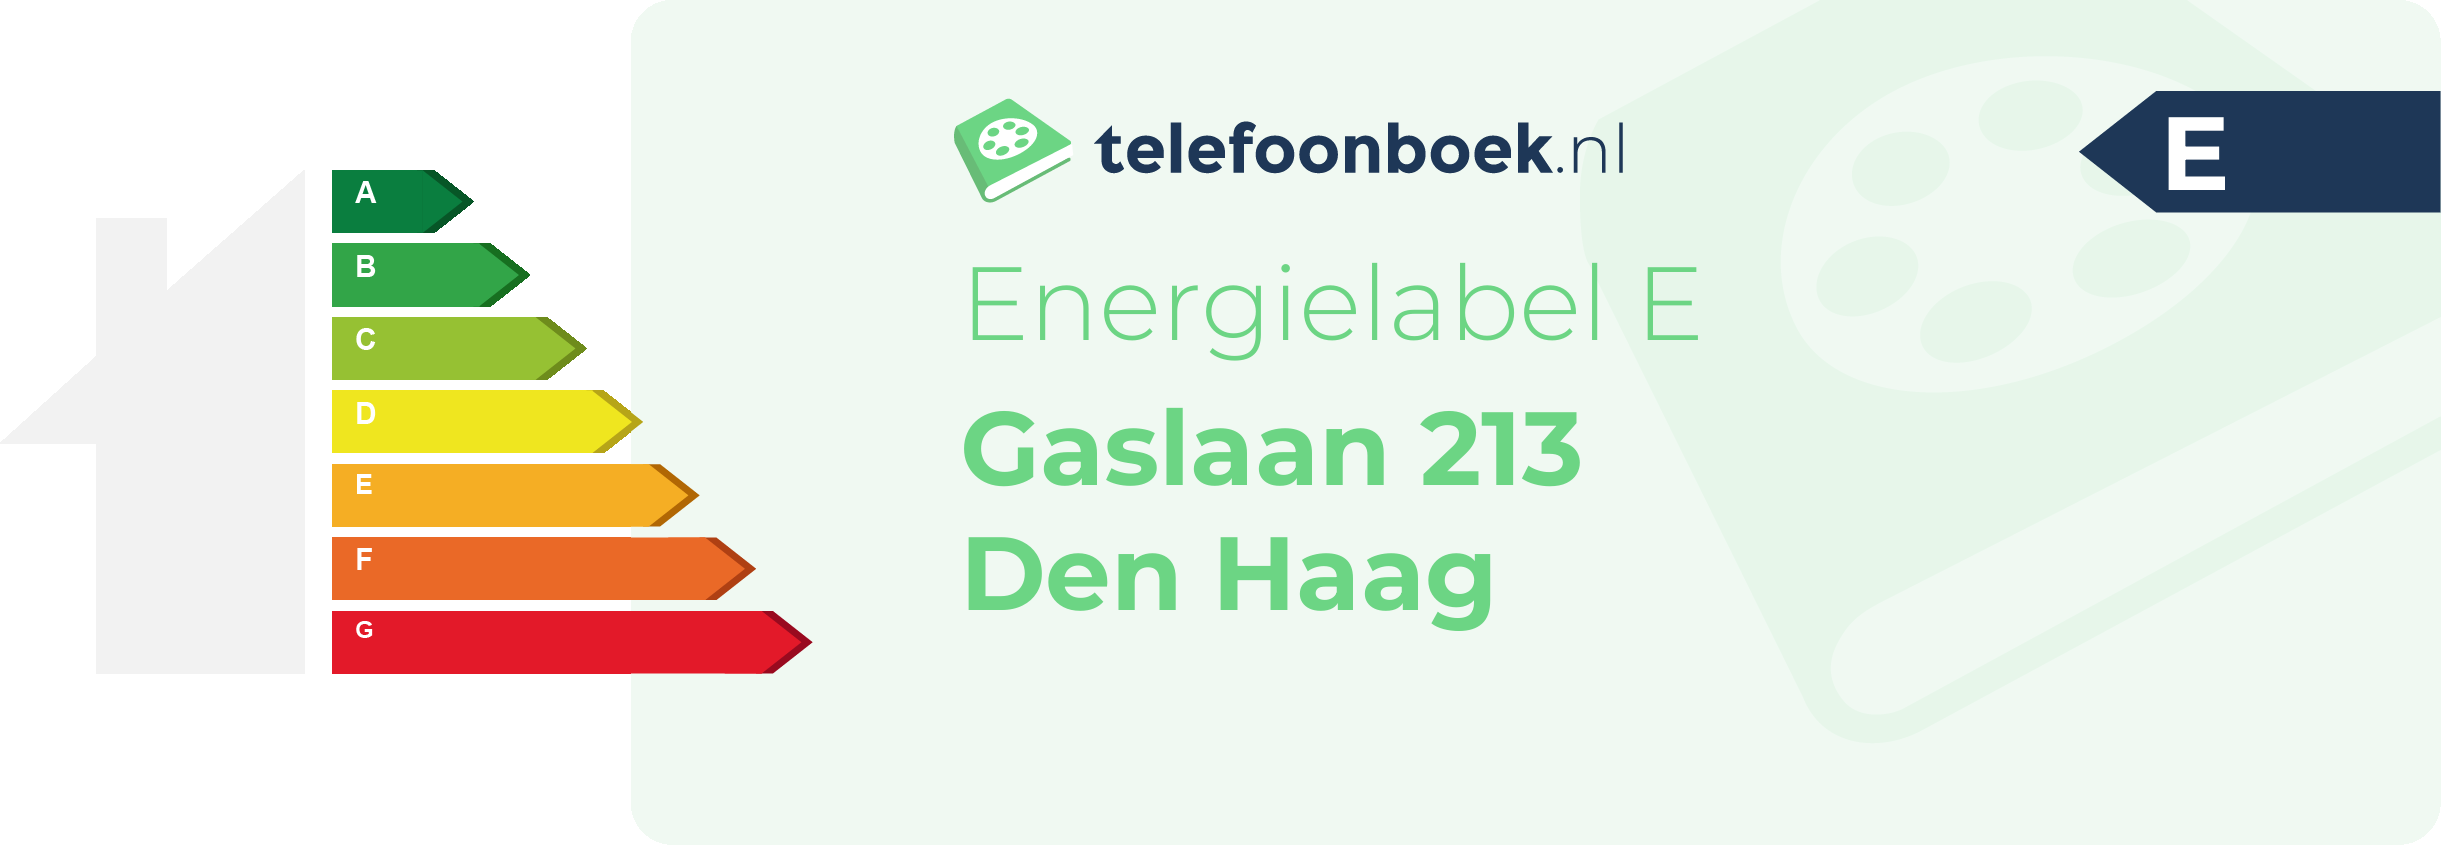 Energielabel Gaslaan 213 Den Haag